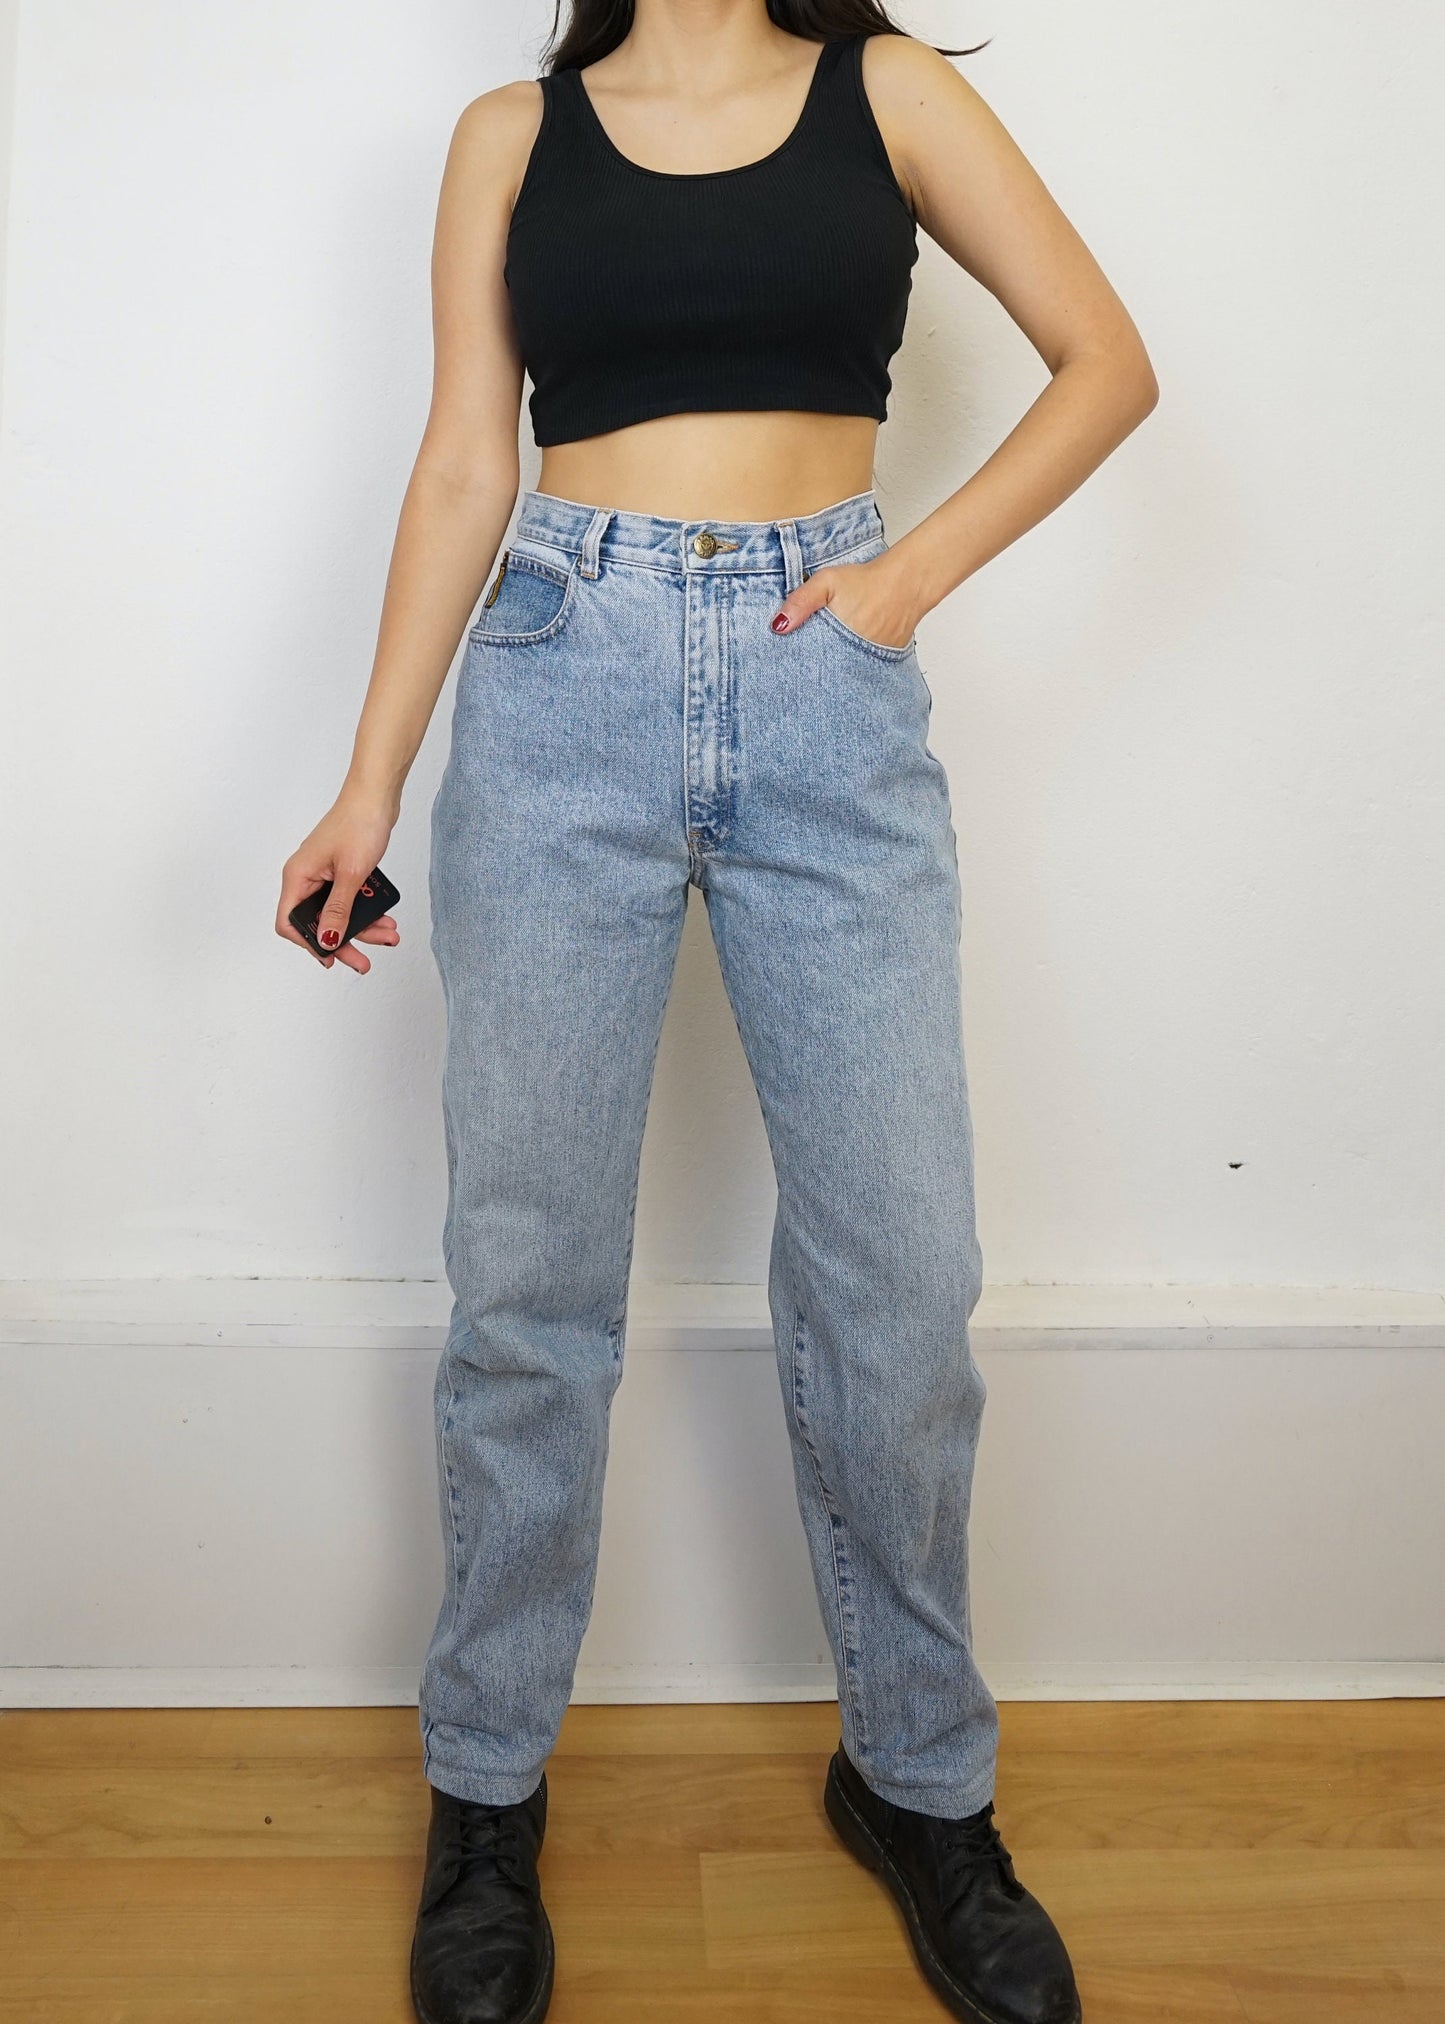 Vintage Armani Jeans size S